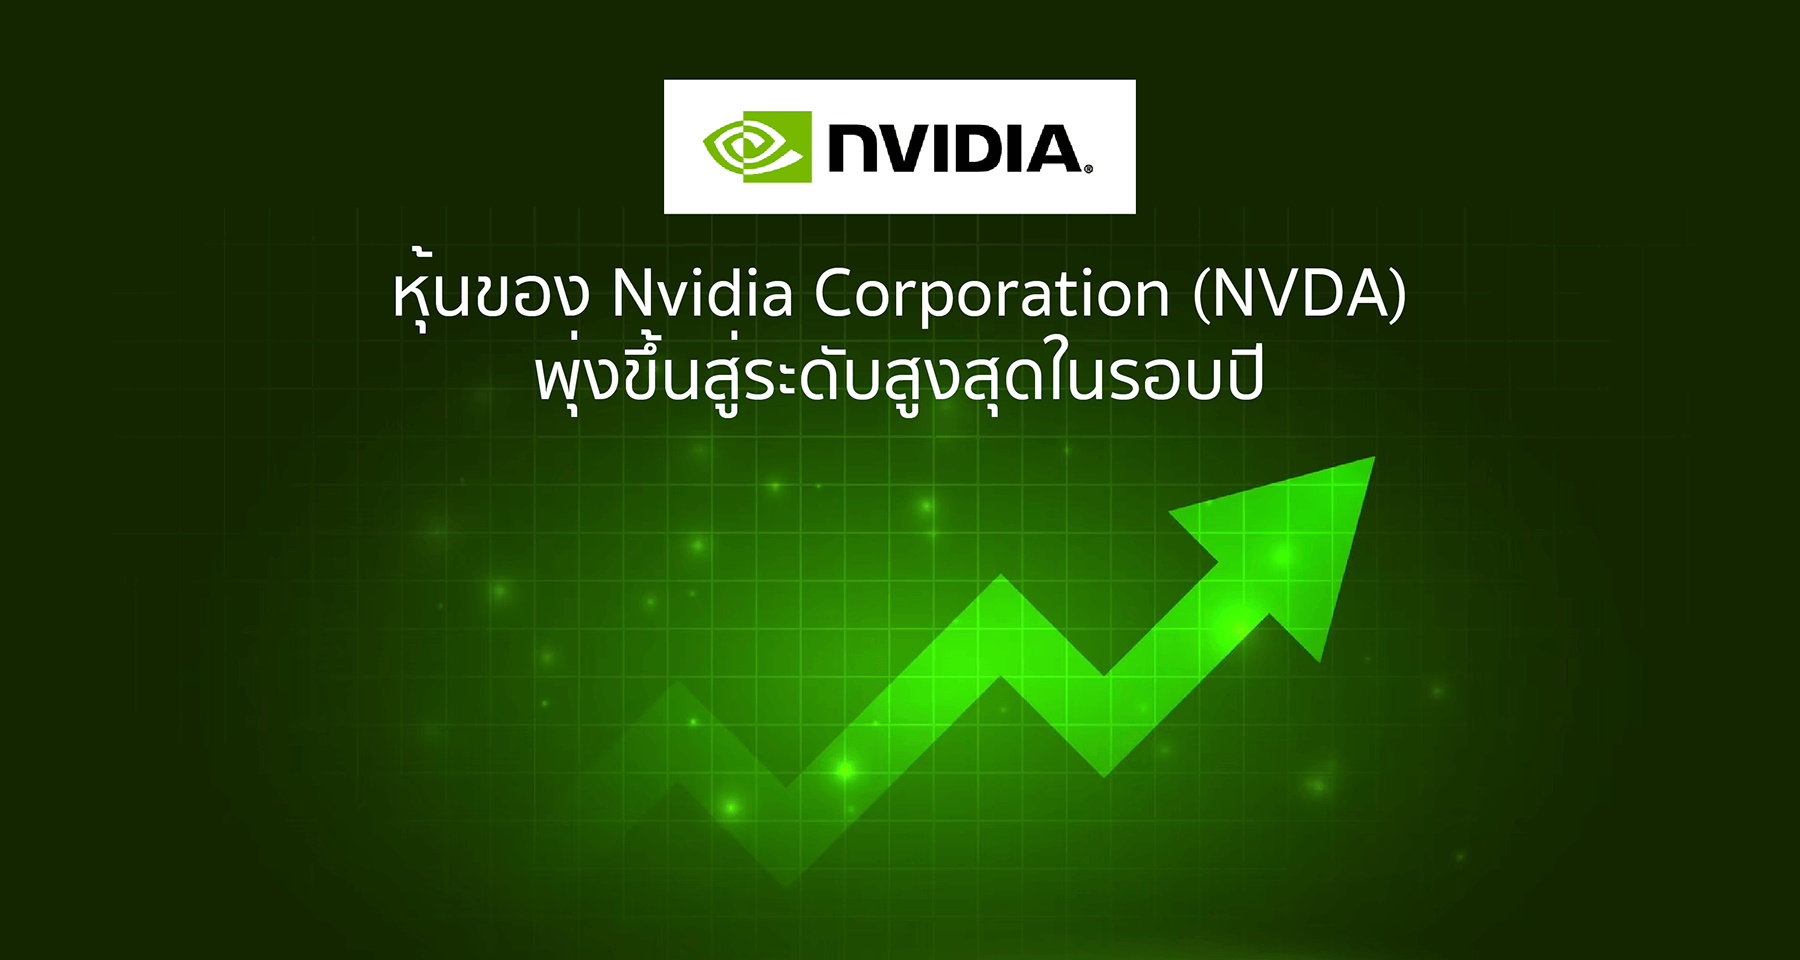 หุ้นของ Nvidia Corporation (NVDA) พุ่งขึ้นสู่ระดับสูงสุดในรอบปี